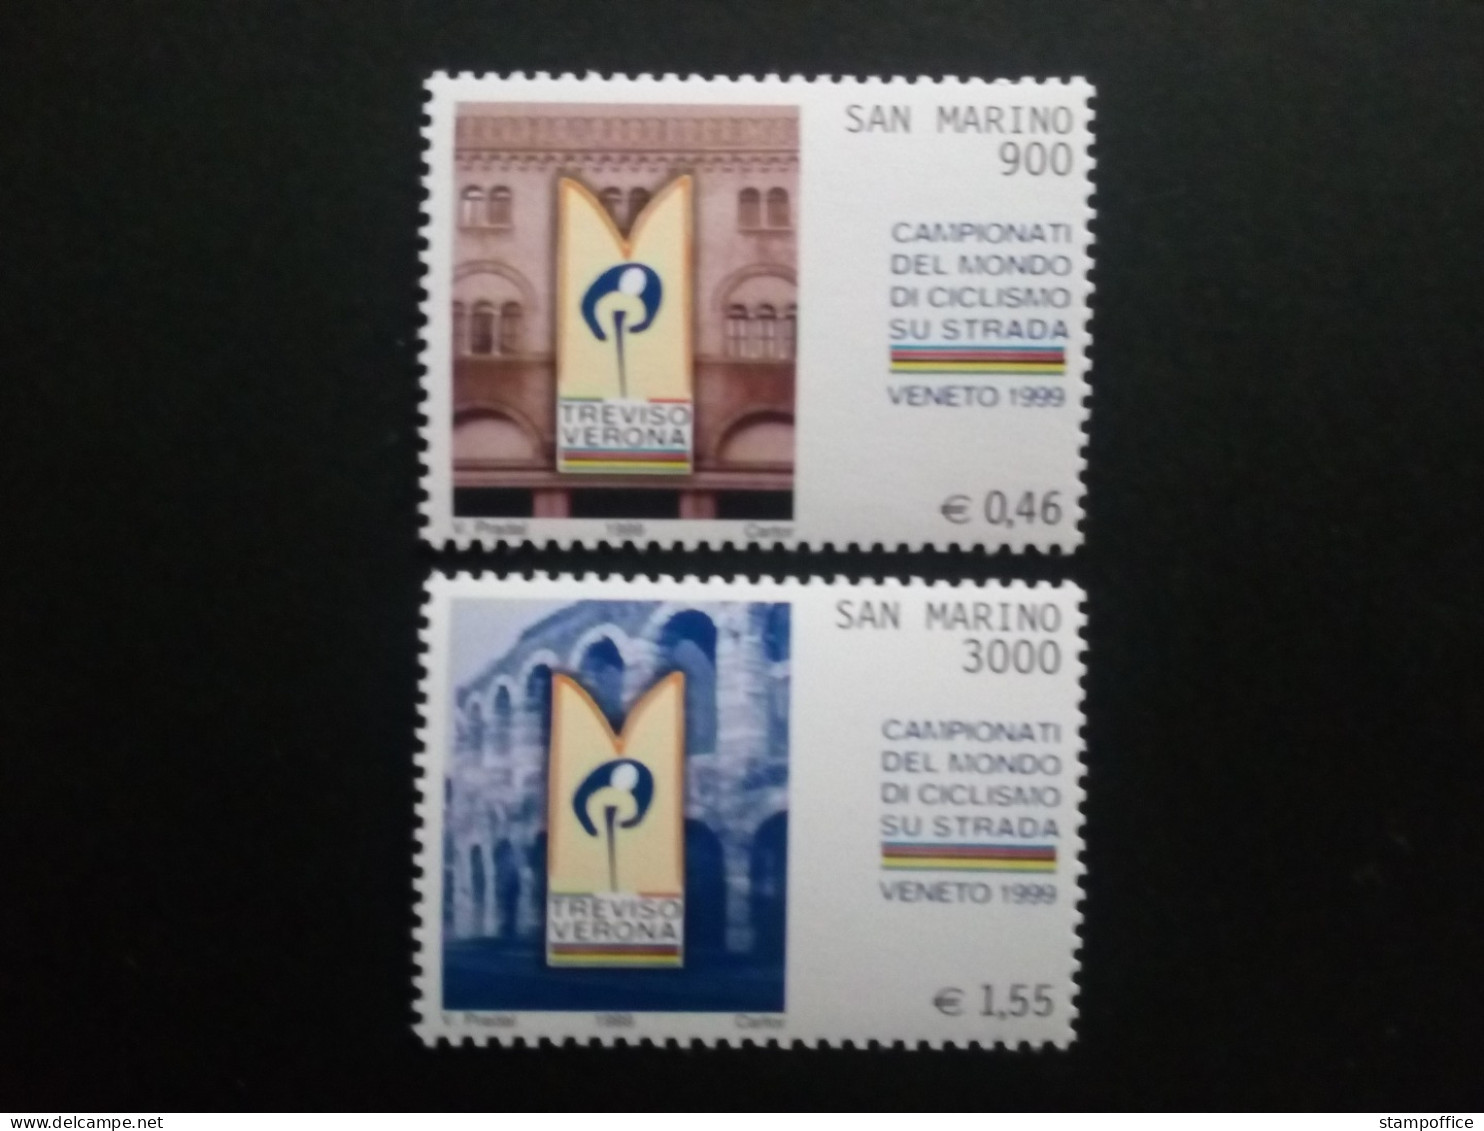 SAN MARINO MI-NR. 1834-1835 POSTFRISCH(MINT) STRASSENRAD WM TREVISO VERONA 1999 - Unused Stamps